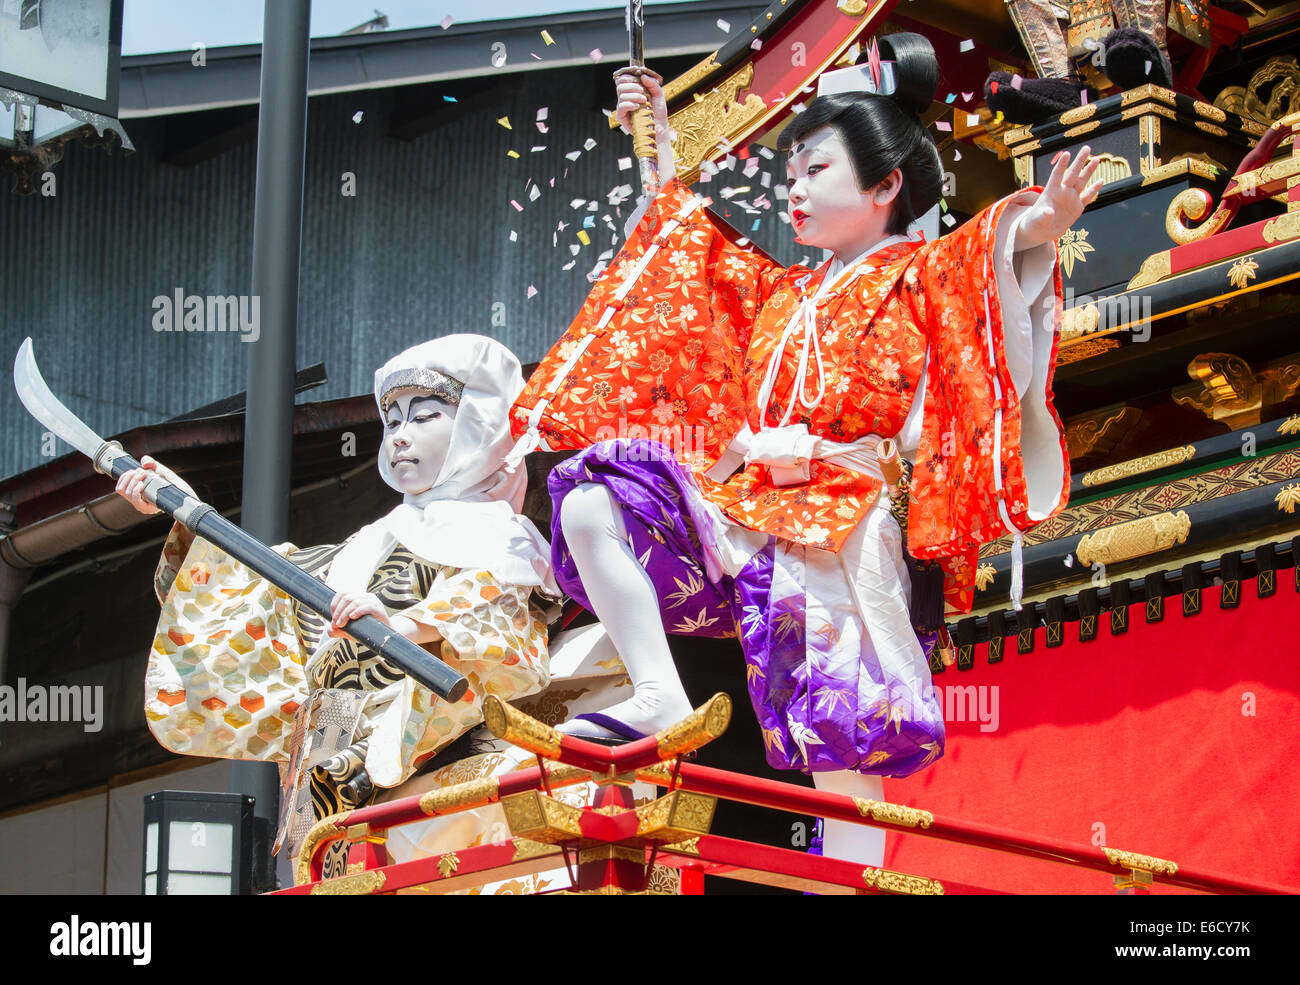 Les enfants participant à une performance au sommet d'un Kabuki yatai (float) pendant le Festival, Hida-Furukawa Furukawa, au Japon. Banque D'Images